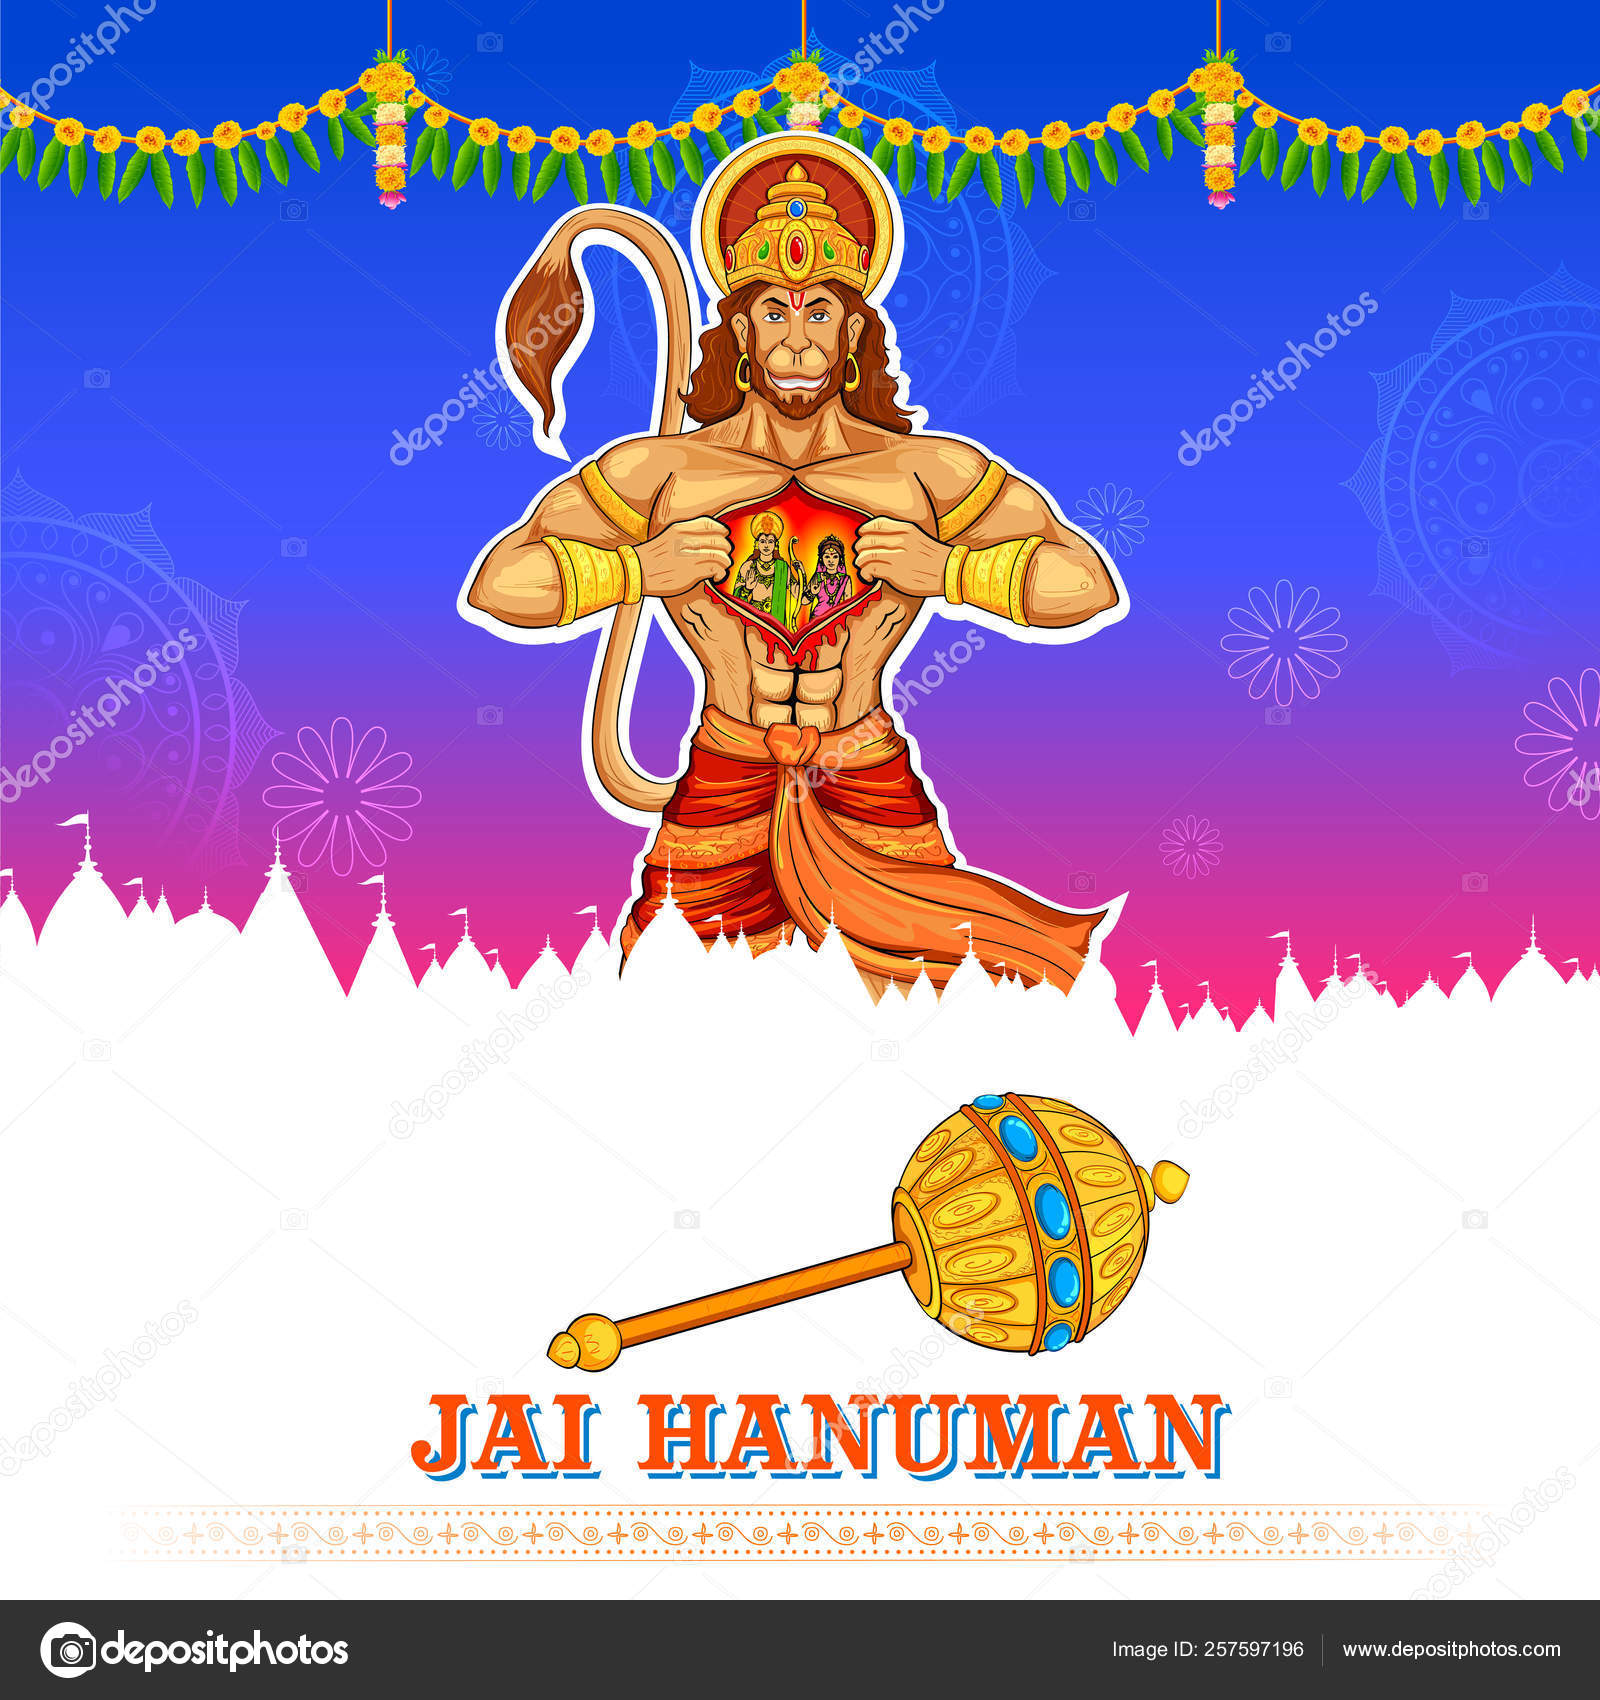 FREE Download Hanuman Wallpapers